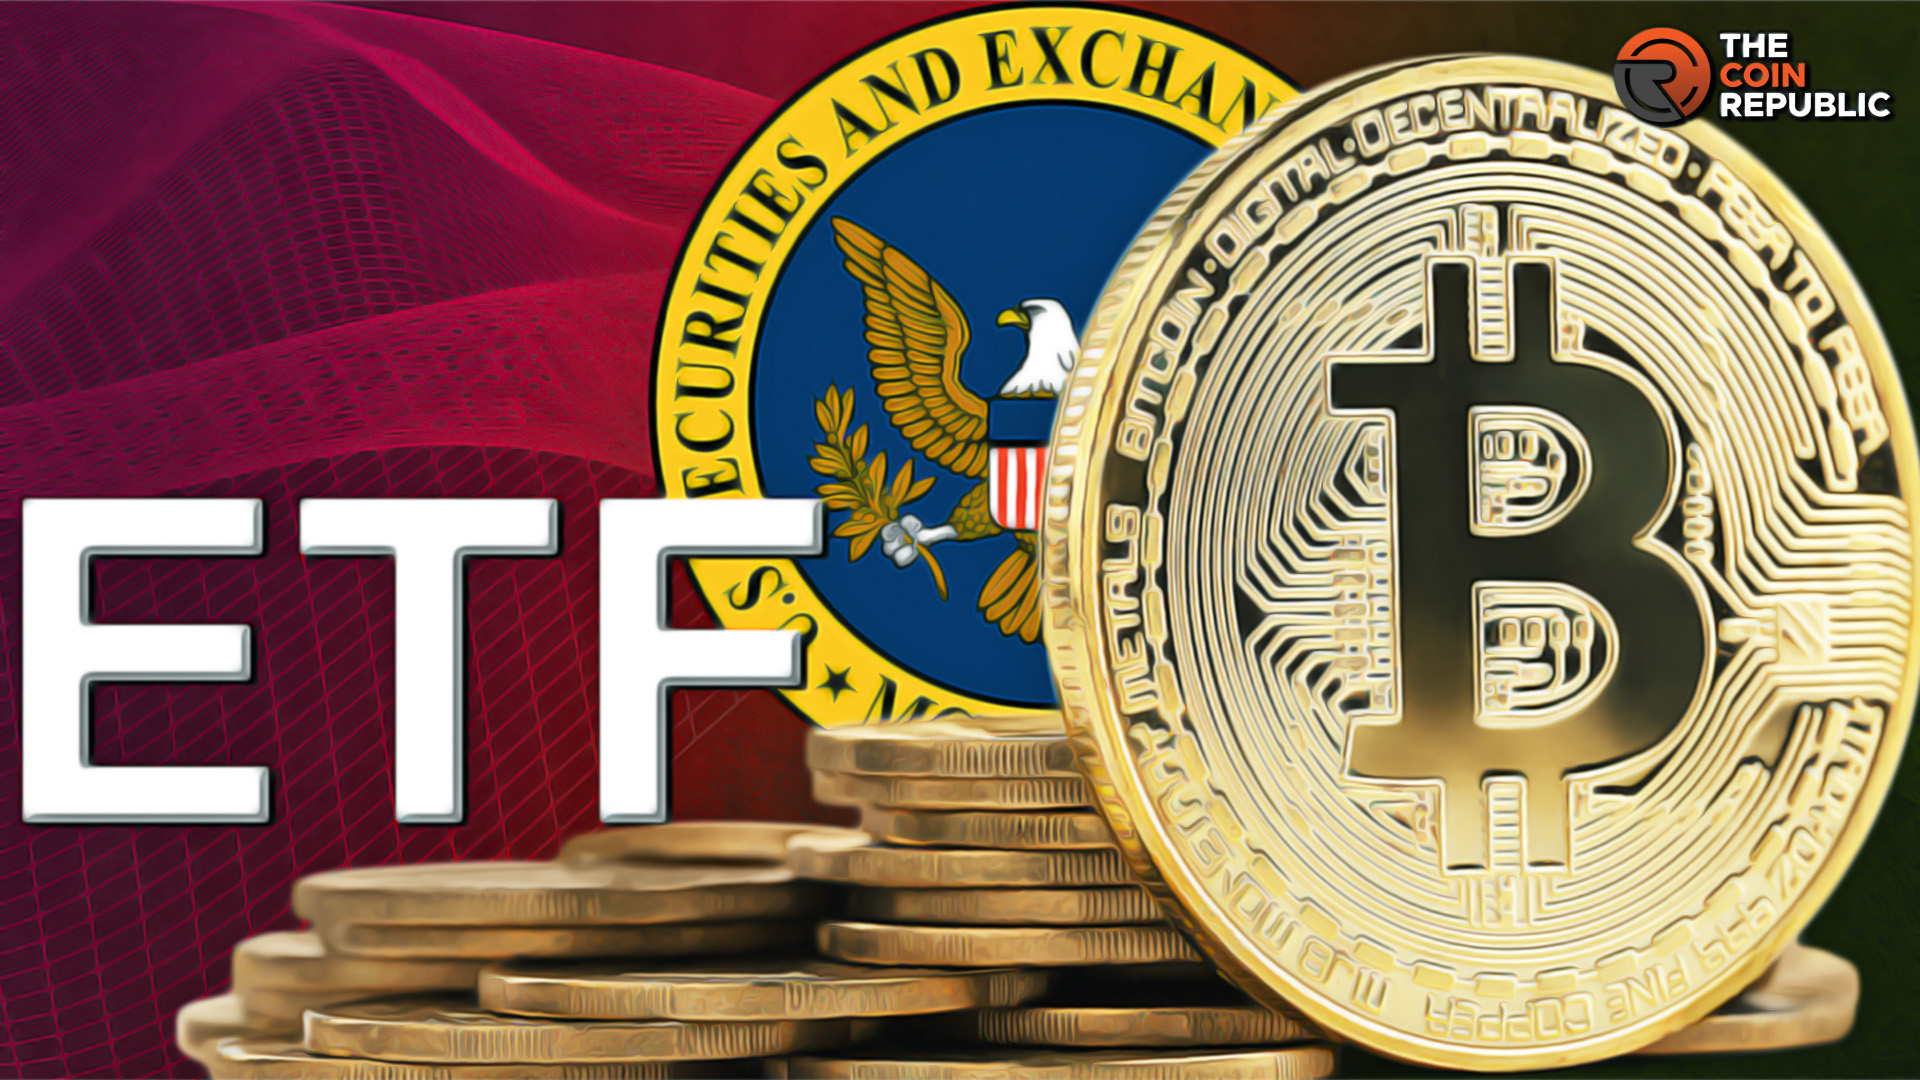 Steven Schoenfeld Says SEC’s Approval for Bitcoin ETF is “Near”